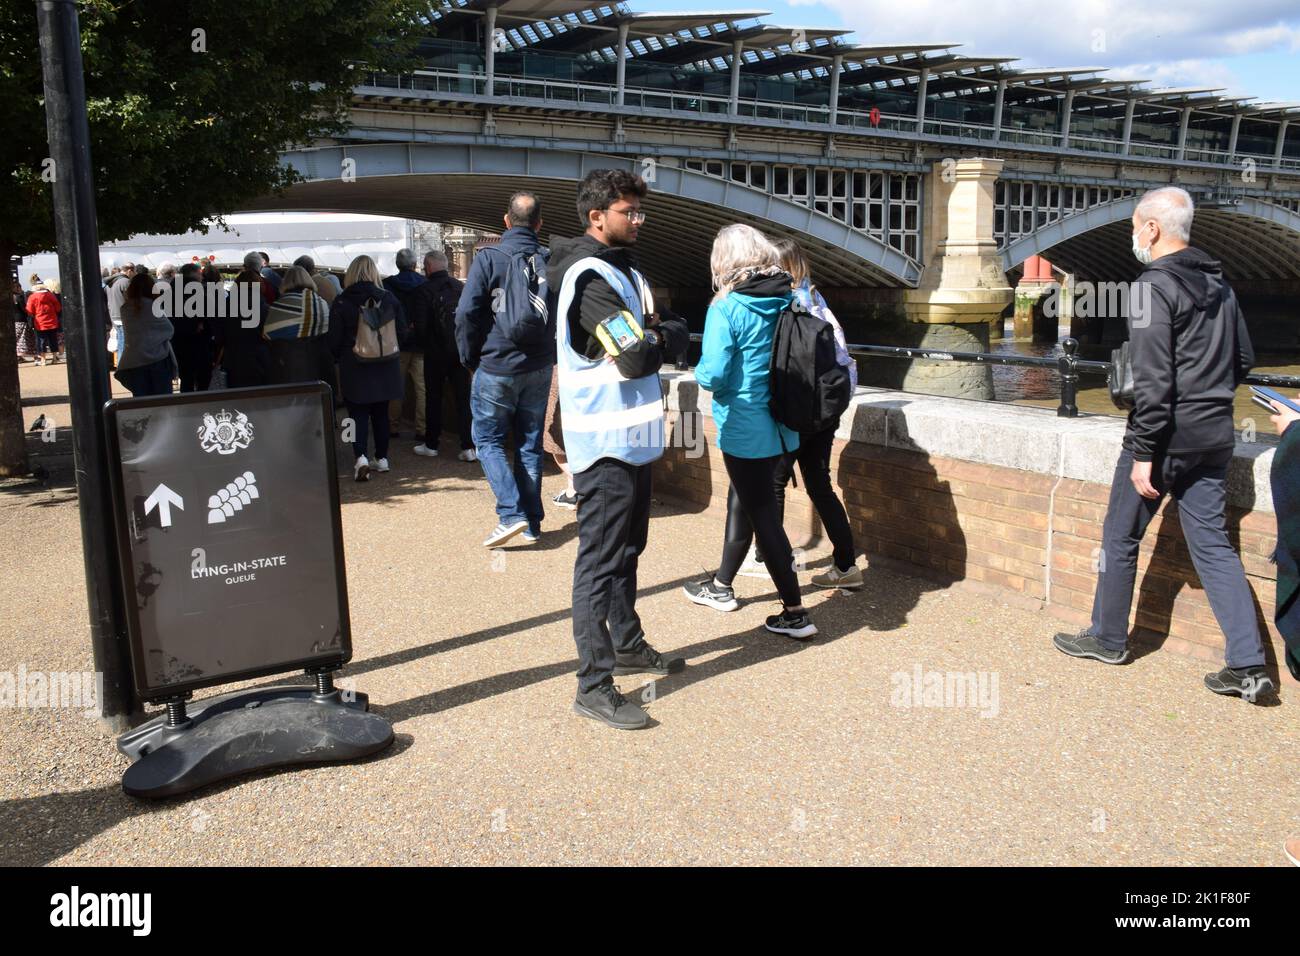 Des gens font la queue le long de la Tamise pour voir le cercueil de la reine Elizabeth II, Londres, Royaume-Uni, septembre 2022 Banque D'Images